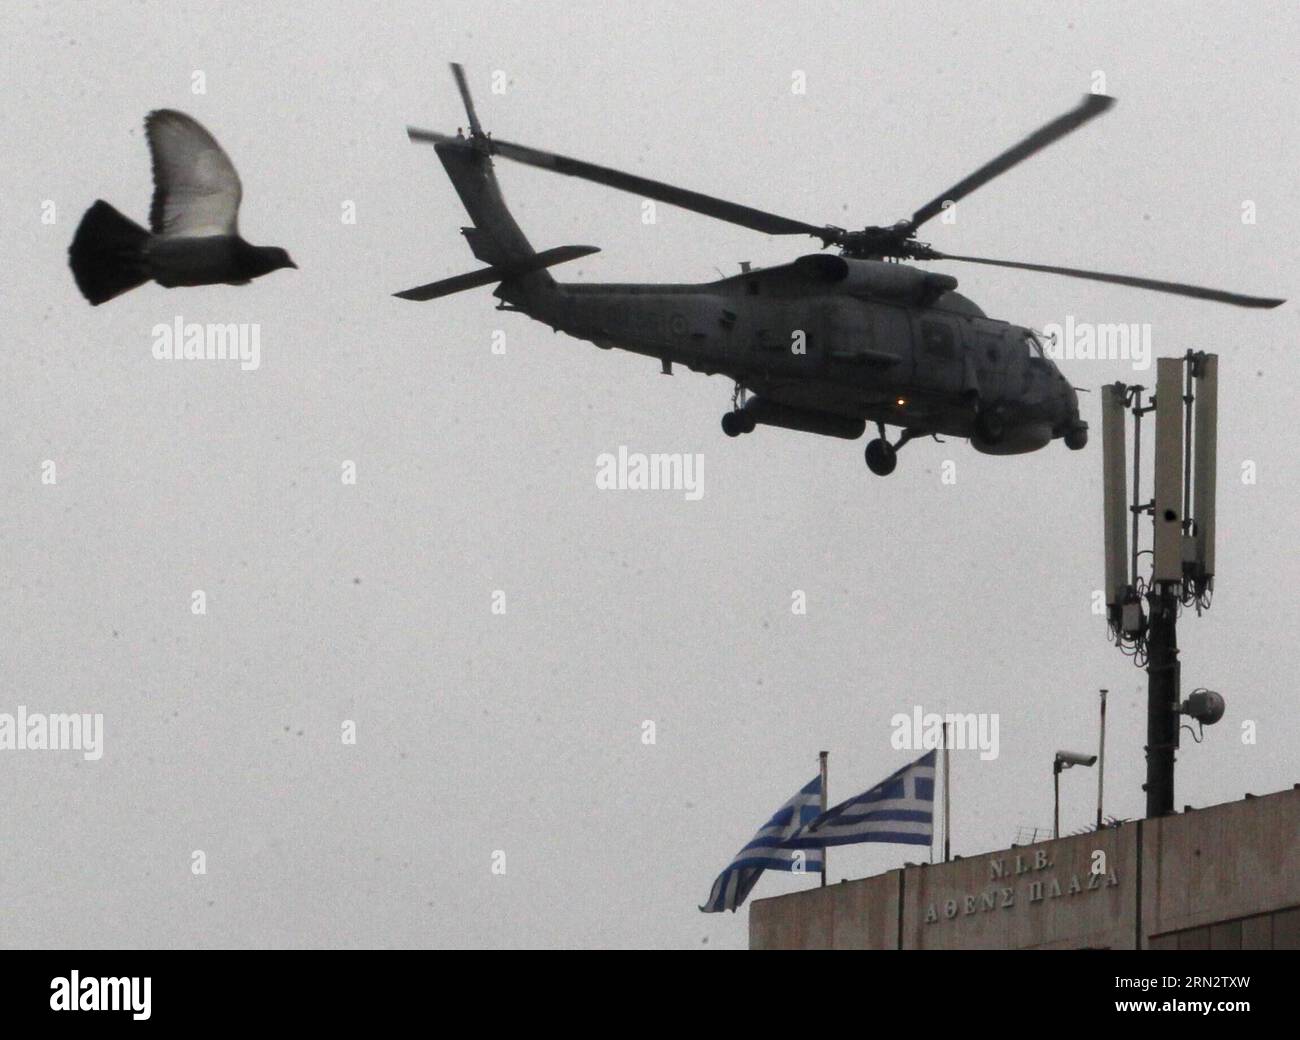 (150325) -- ATHEN, 25. März 2015 -- Ein Militärhubschrauber nimmt am 25. März 2014 an der Parade zum Unabhängigkeitstag in Athen Teil. Der Unabhängigkeitstag markiert den Beginn der griechischen Revolution gegen die osmanische Herrschaft im Jahr 1821. (Zhf) GRIECHENLAND-ATHEN-UNABHÄNGIGKEITSTAG MariosxLolos PUBLICATIONxNOTxINxCHN Athen März 25 2015 ein Militärhubschrauber nimmt an der UNABHÄNGIGKEITSPARADE in Athen Griechenland AM 25 2014. März Teil der Unabhängigkeitstag markiert den Beginn der griechischen Revolution gegen die OSMANISCHE Herrschaft in 1821 Griechenland Athen der Unabhängigkeitstag MARIOSXLOLOS PUBLICATIONxNOTxINxCHN Stockfoto